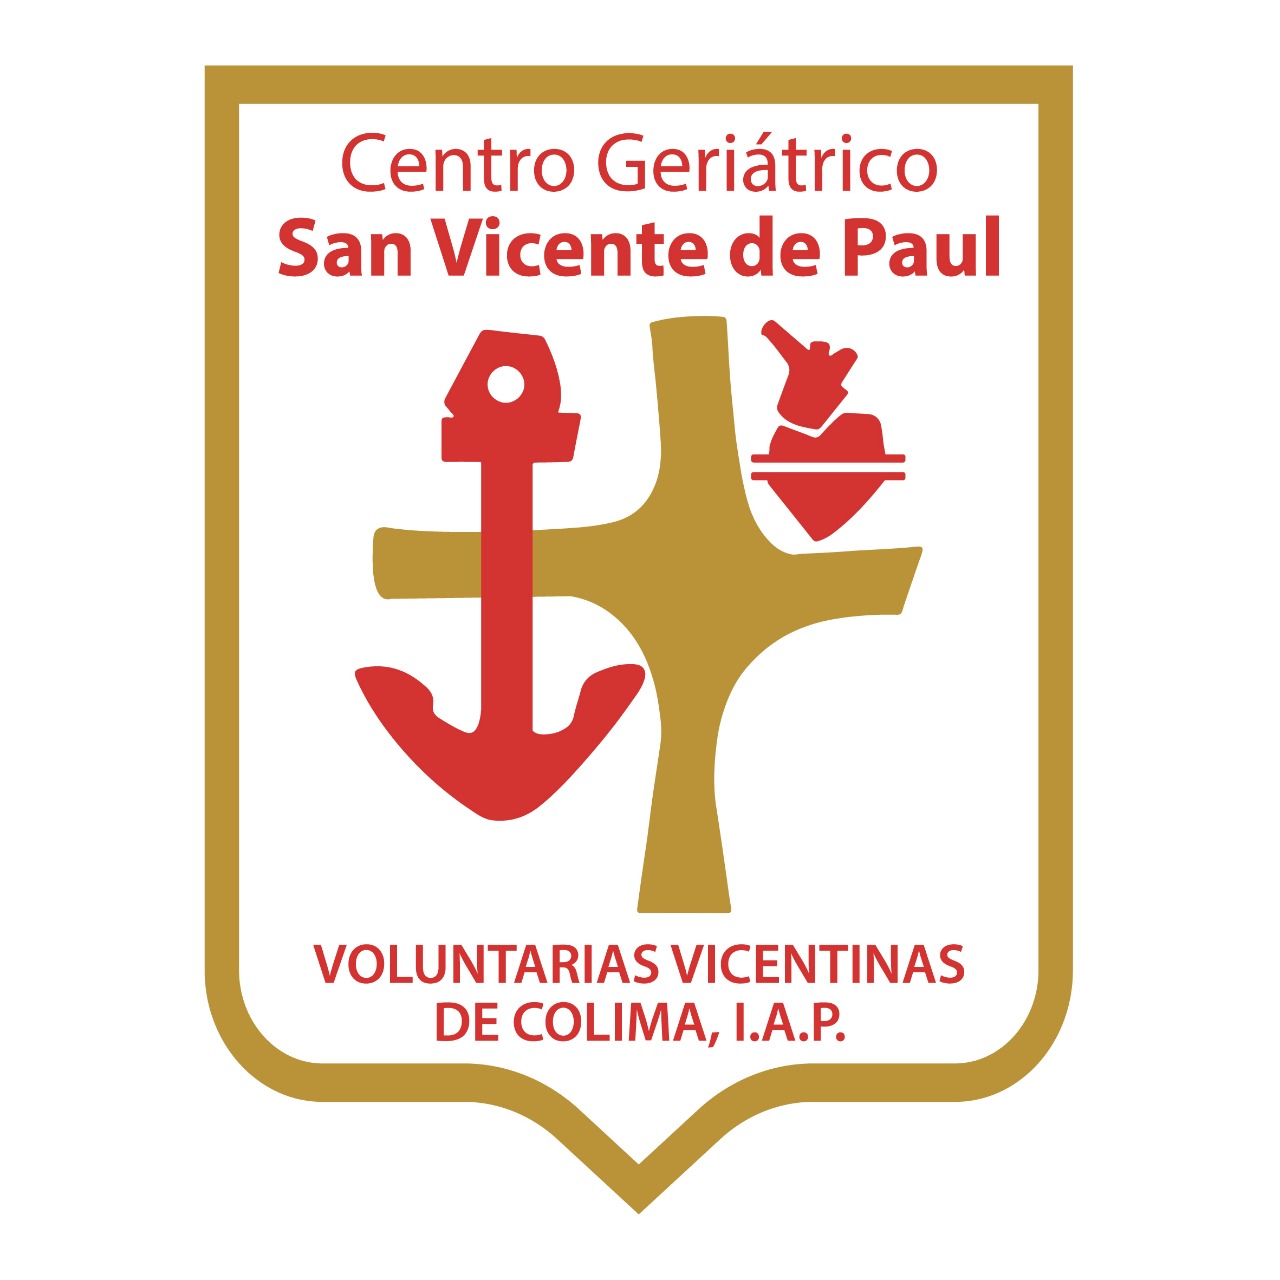 Voluntarias Vicentinas de Colima, I.A.P.